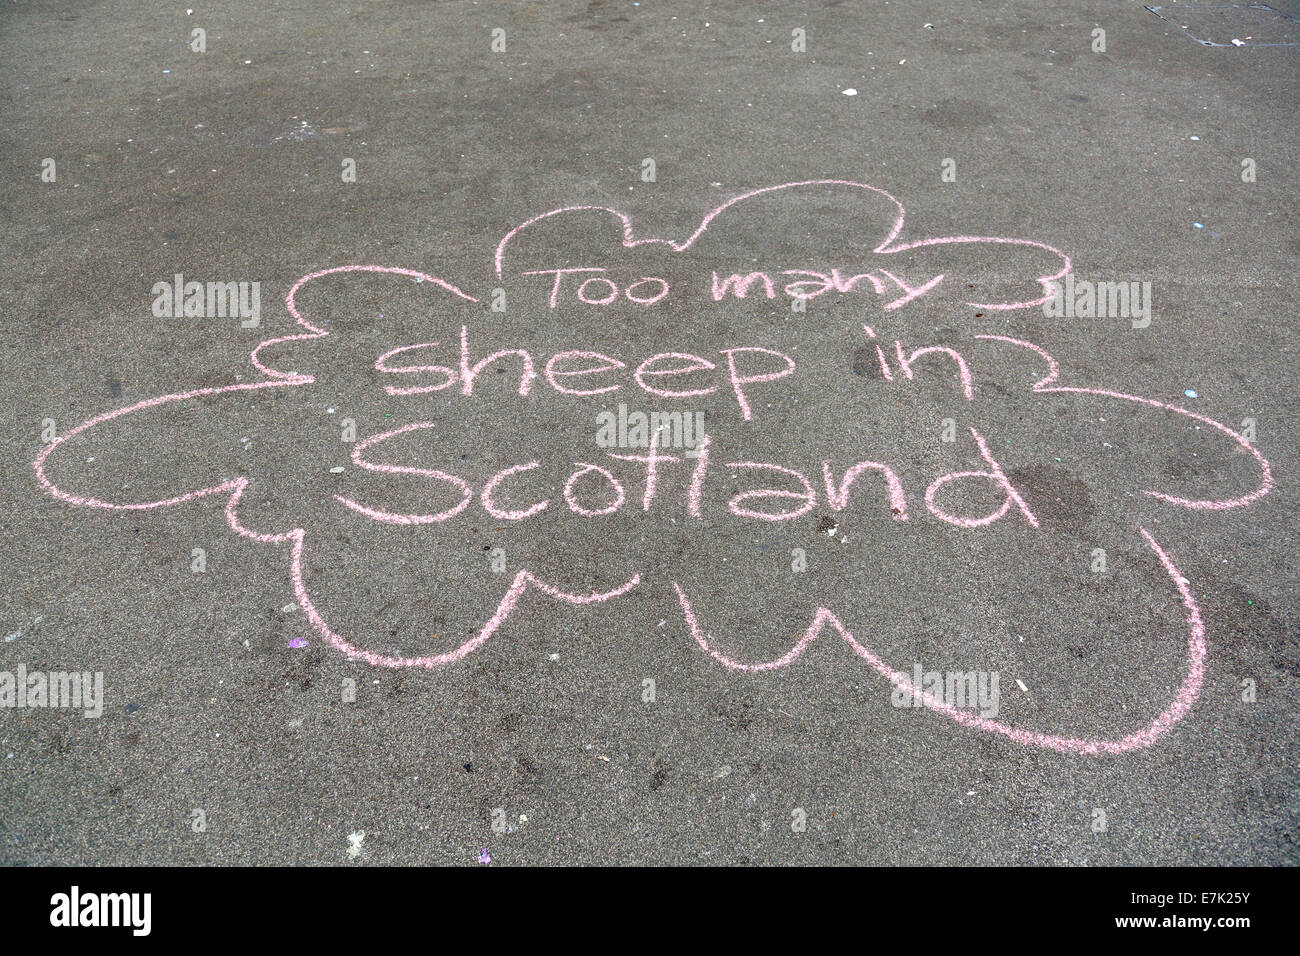 George Square, Glasgow, Écosse, Royaume-Uni, vendredi 19 septembre 2014. Le lendemain du vote de l'Écosse au référendum sur l'indépendance, un message de craie est écrit sur le terrain à George Square, dans le centre-ville de Glasgow. Banque D'Images